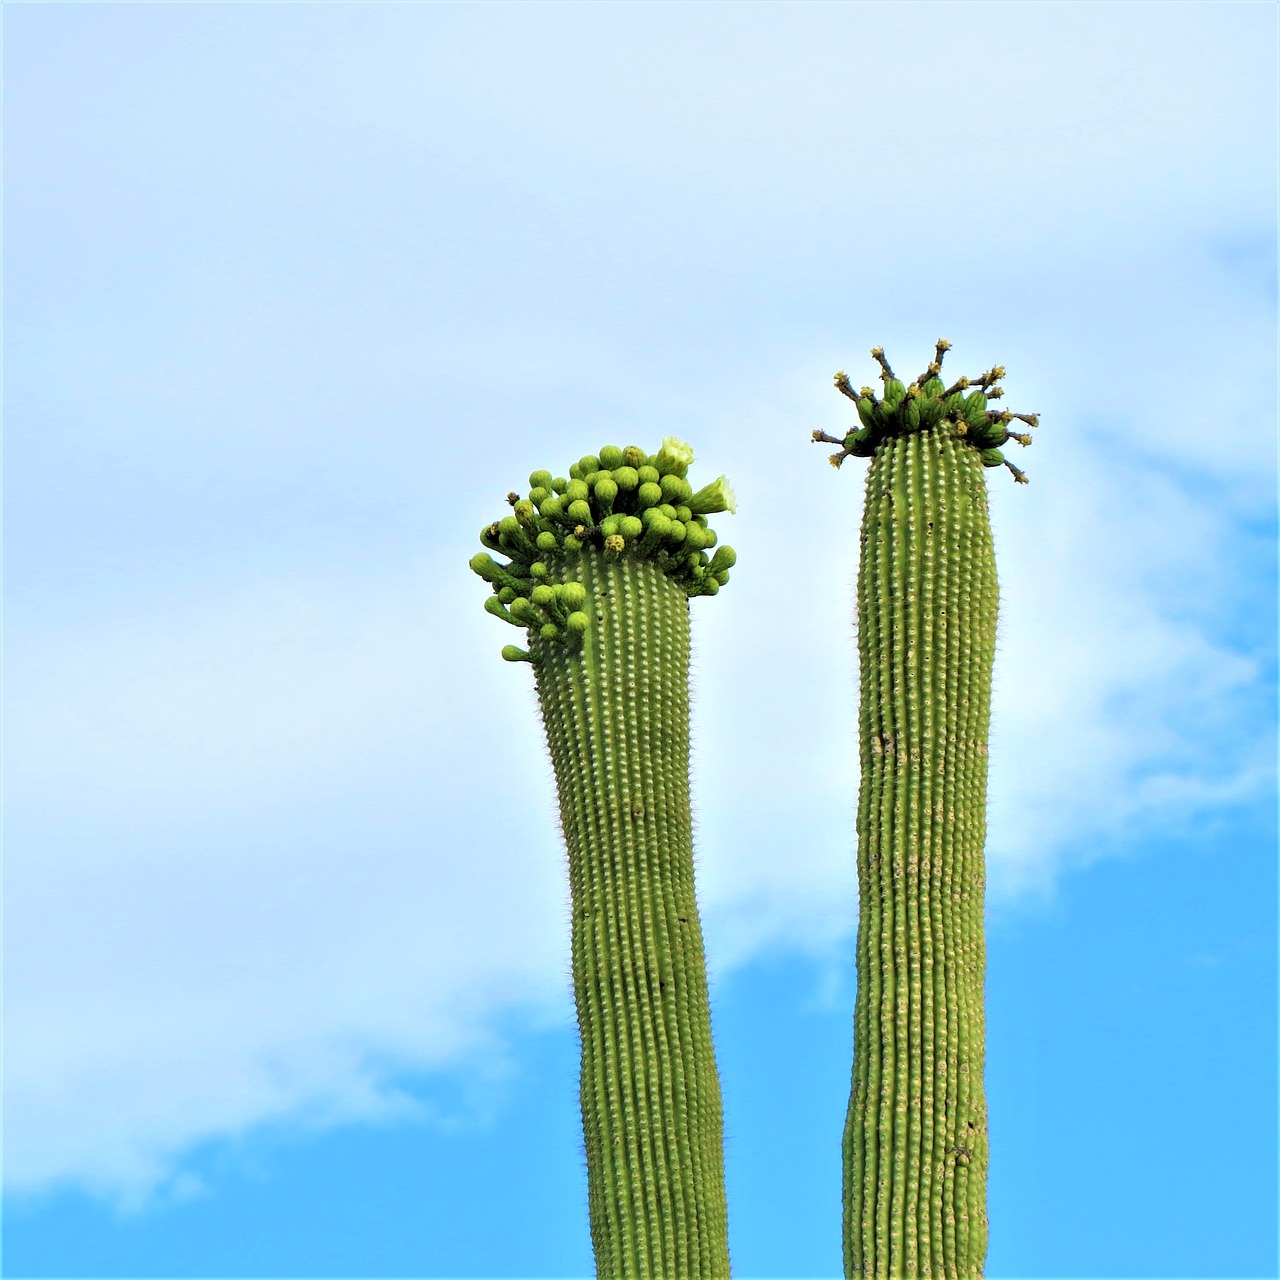 cactus arizona saguaro free photo